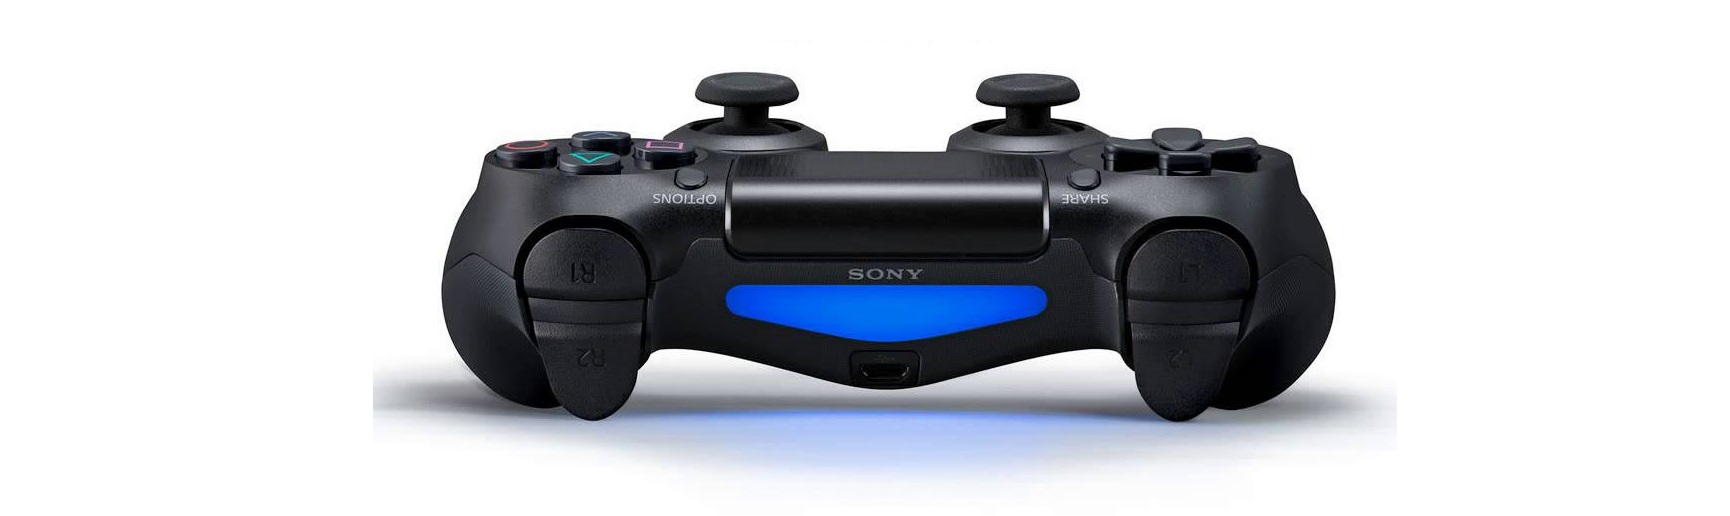 Tay cầm chơi game không dây PS4 Sony DUALSHOCK 4 Controller Xanh pha lê CUH-ZCT2G 19 tích hợp cảm biến chuyển động cho game thích hợp